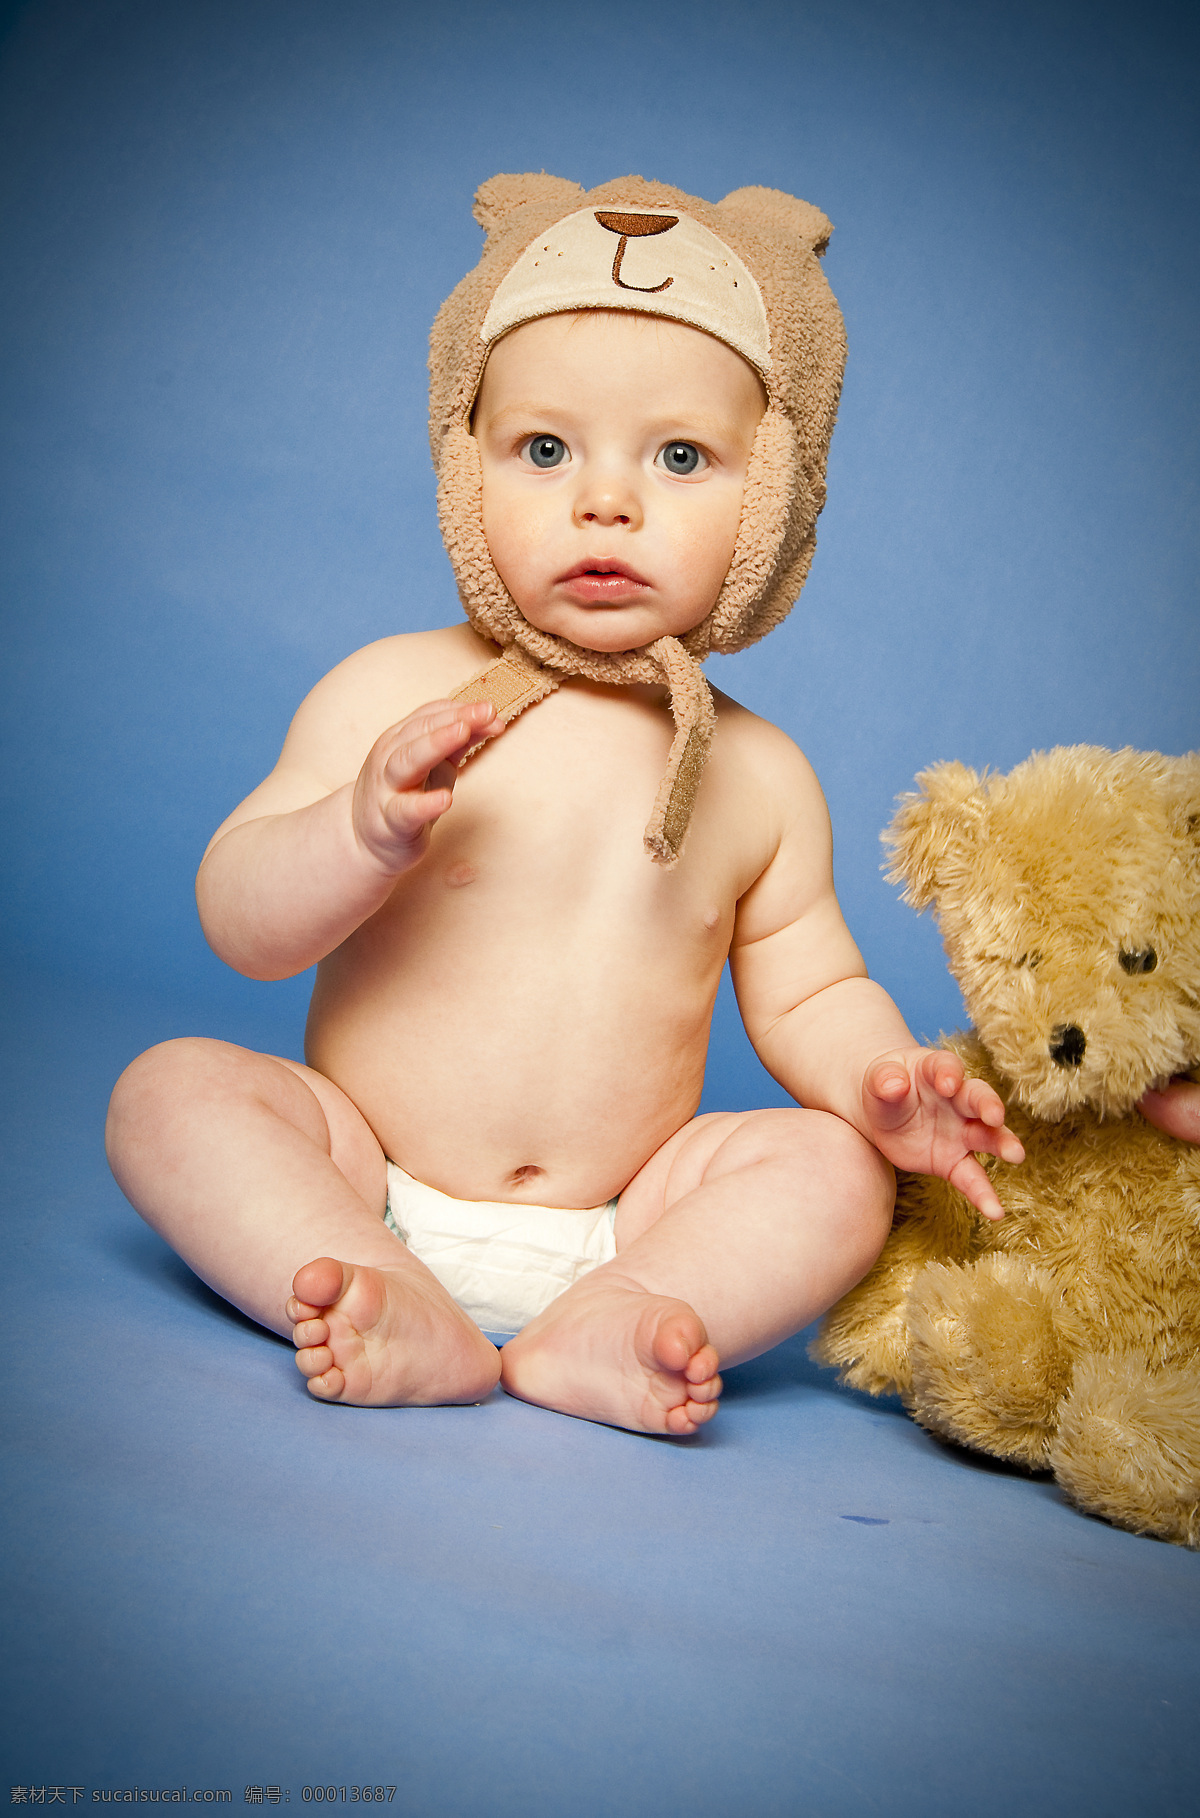 儿童幼儿 可爱宝宝 可爱婴儿 人物图库 玩具熊 带 帽 婴儿 宝宝 儿童 幼儿